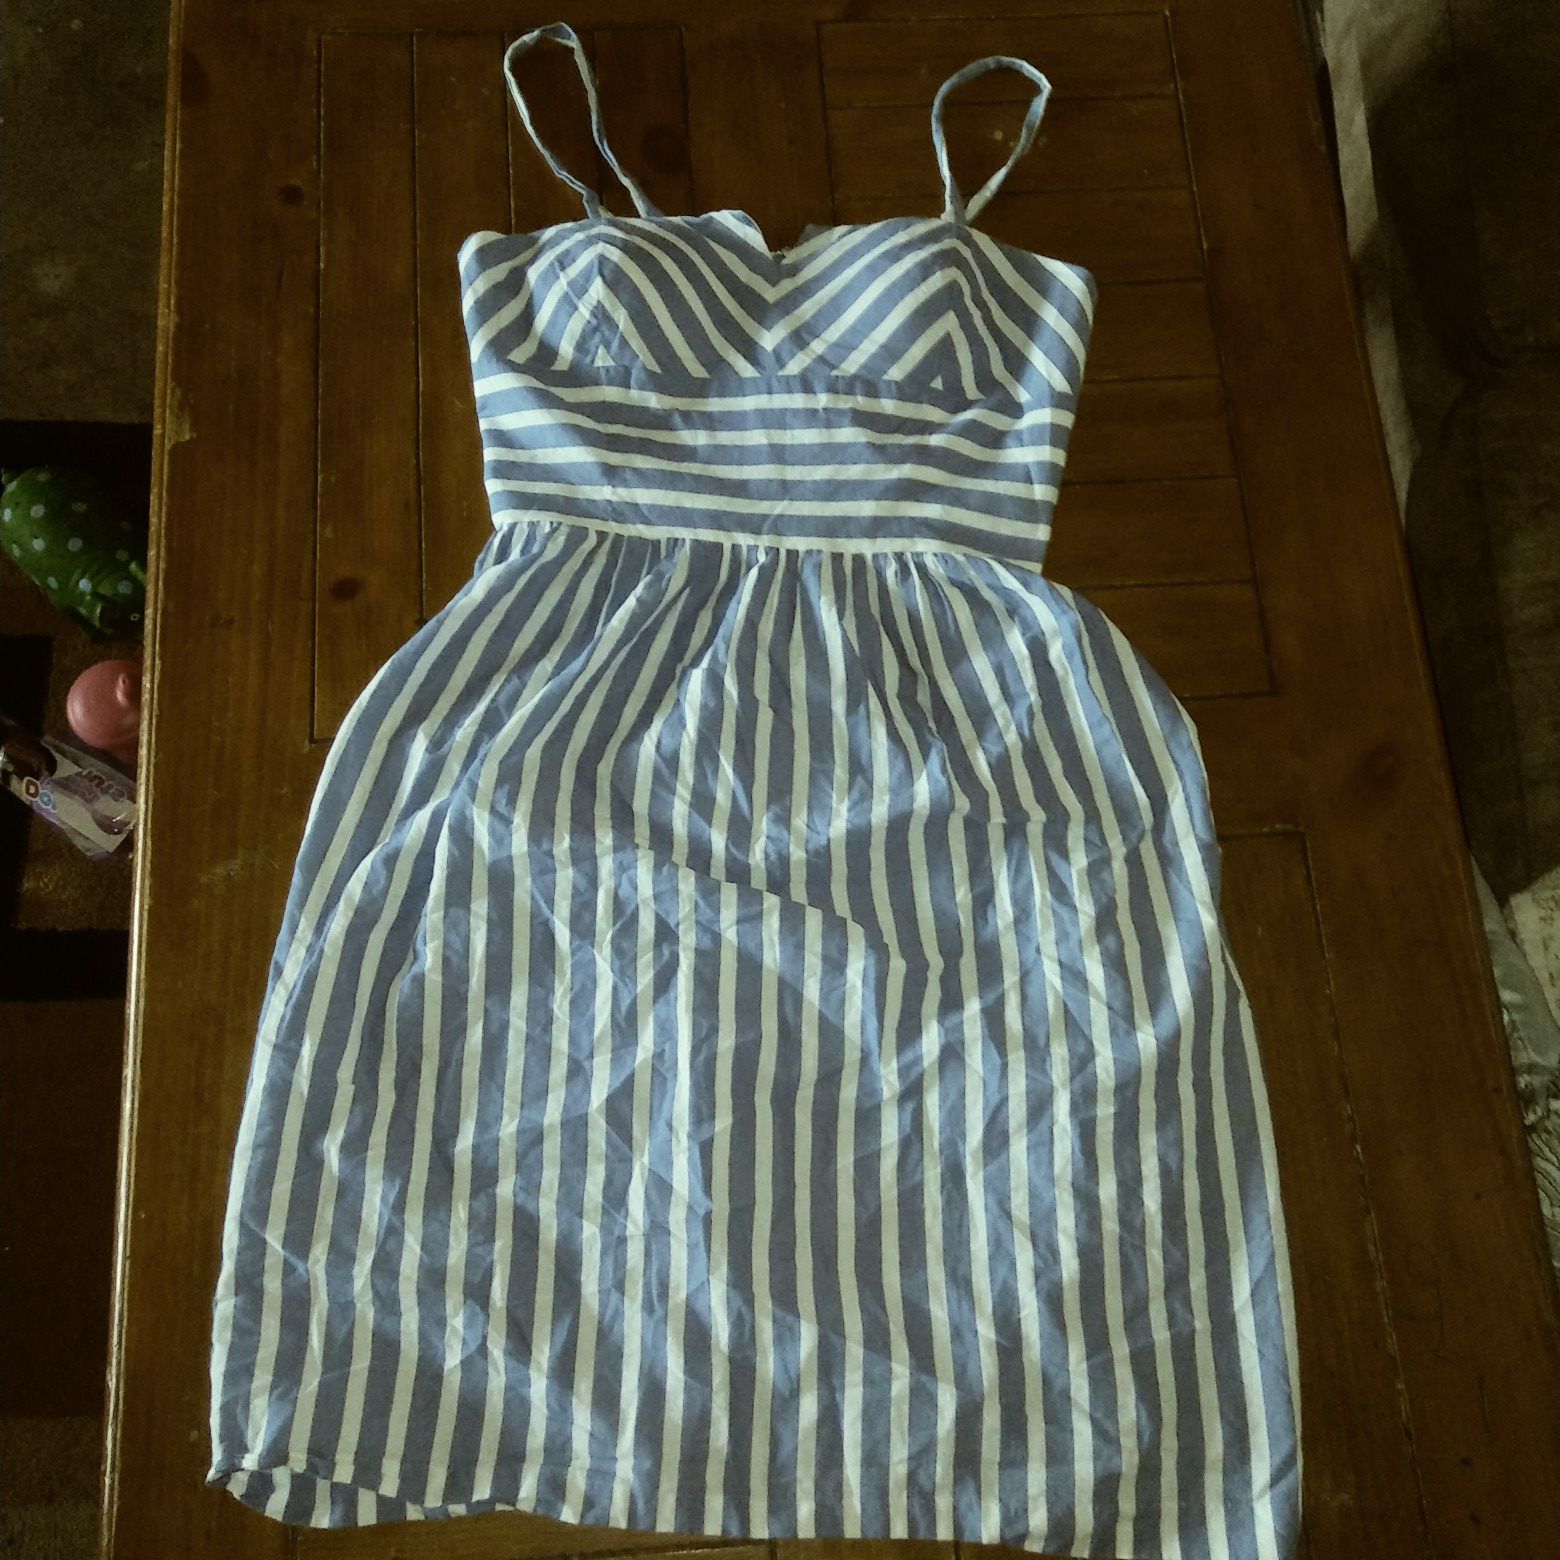 Size 10 sun dress